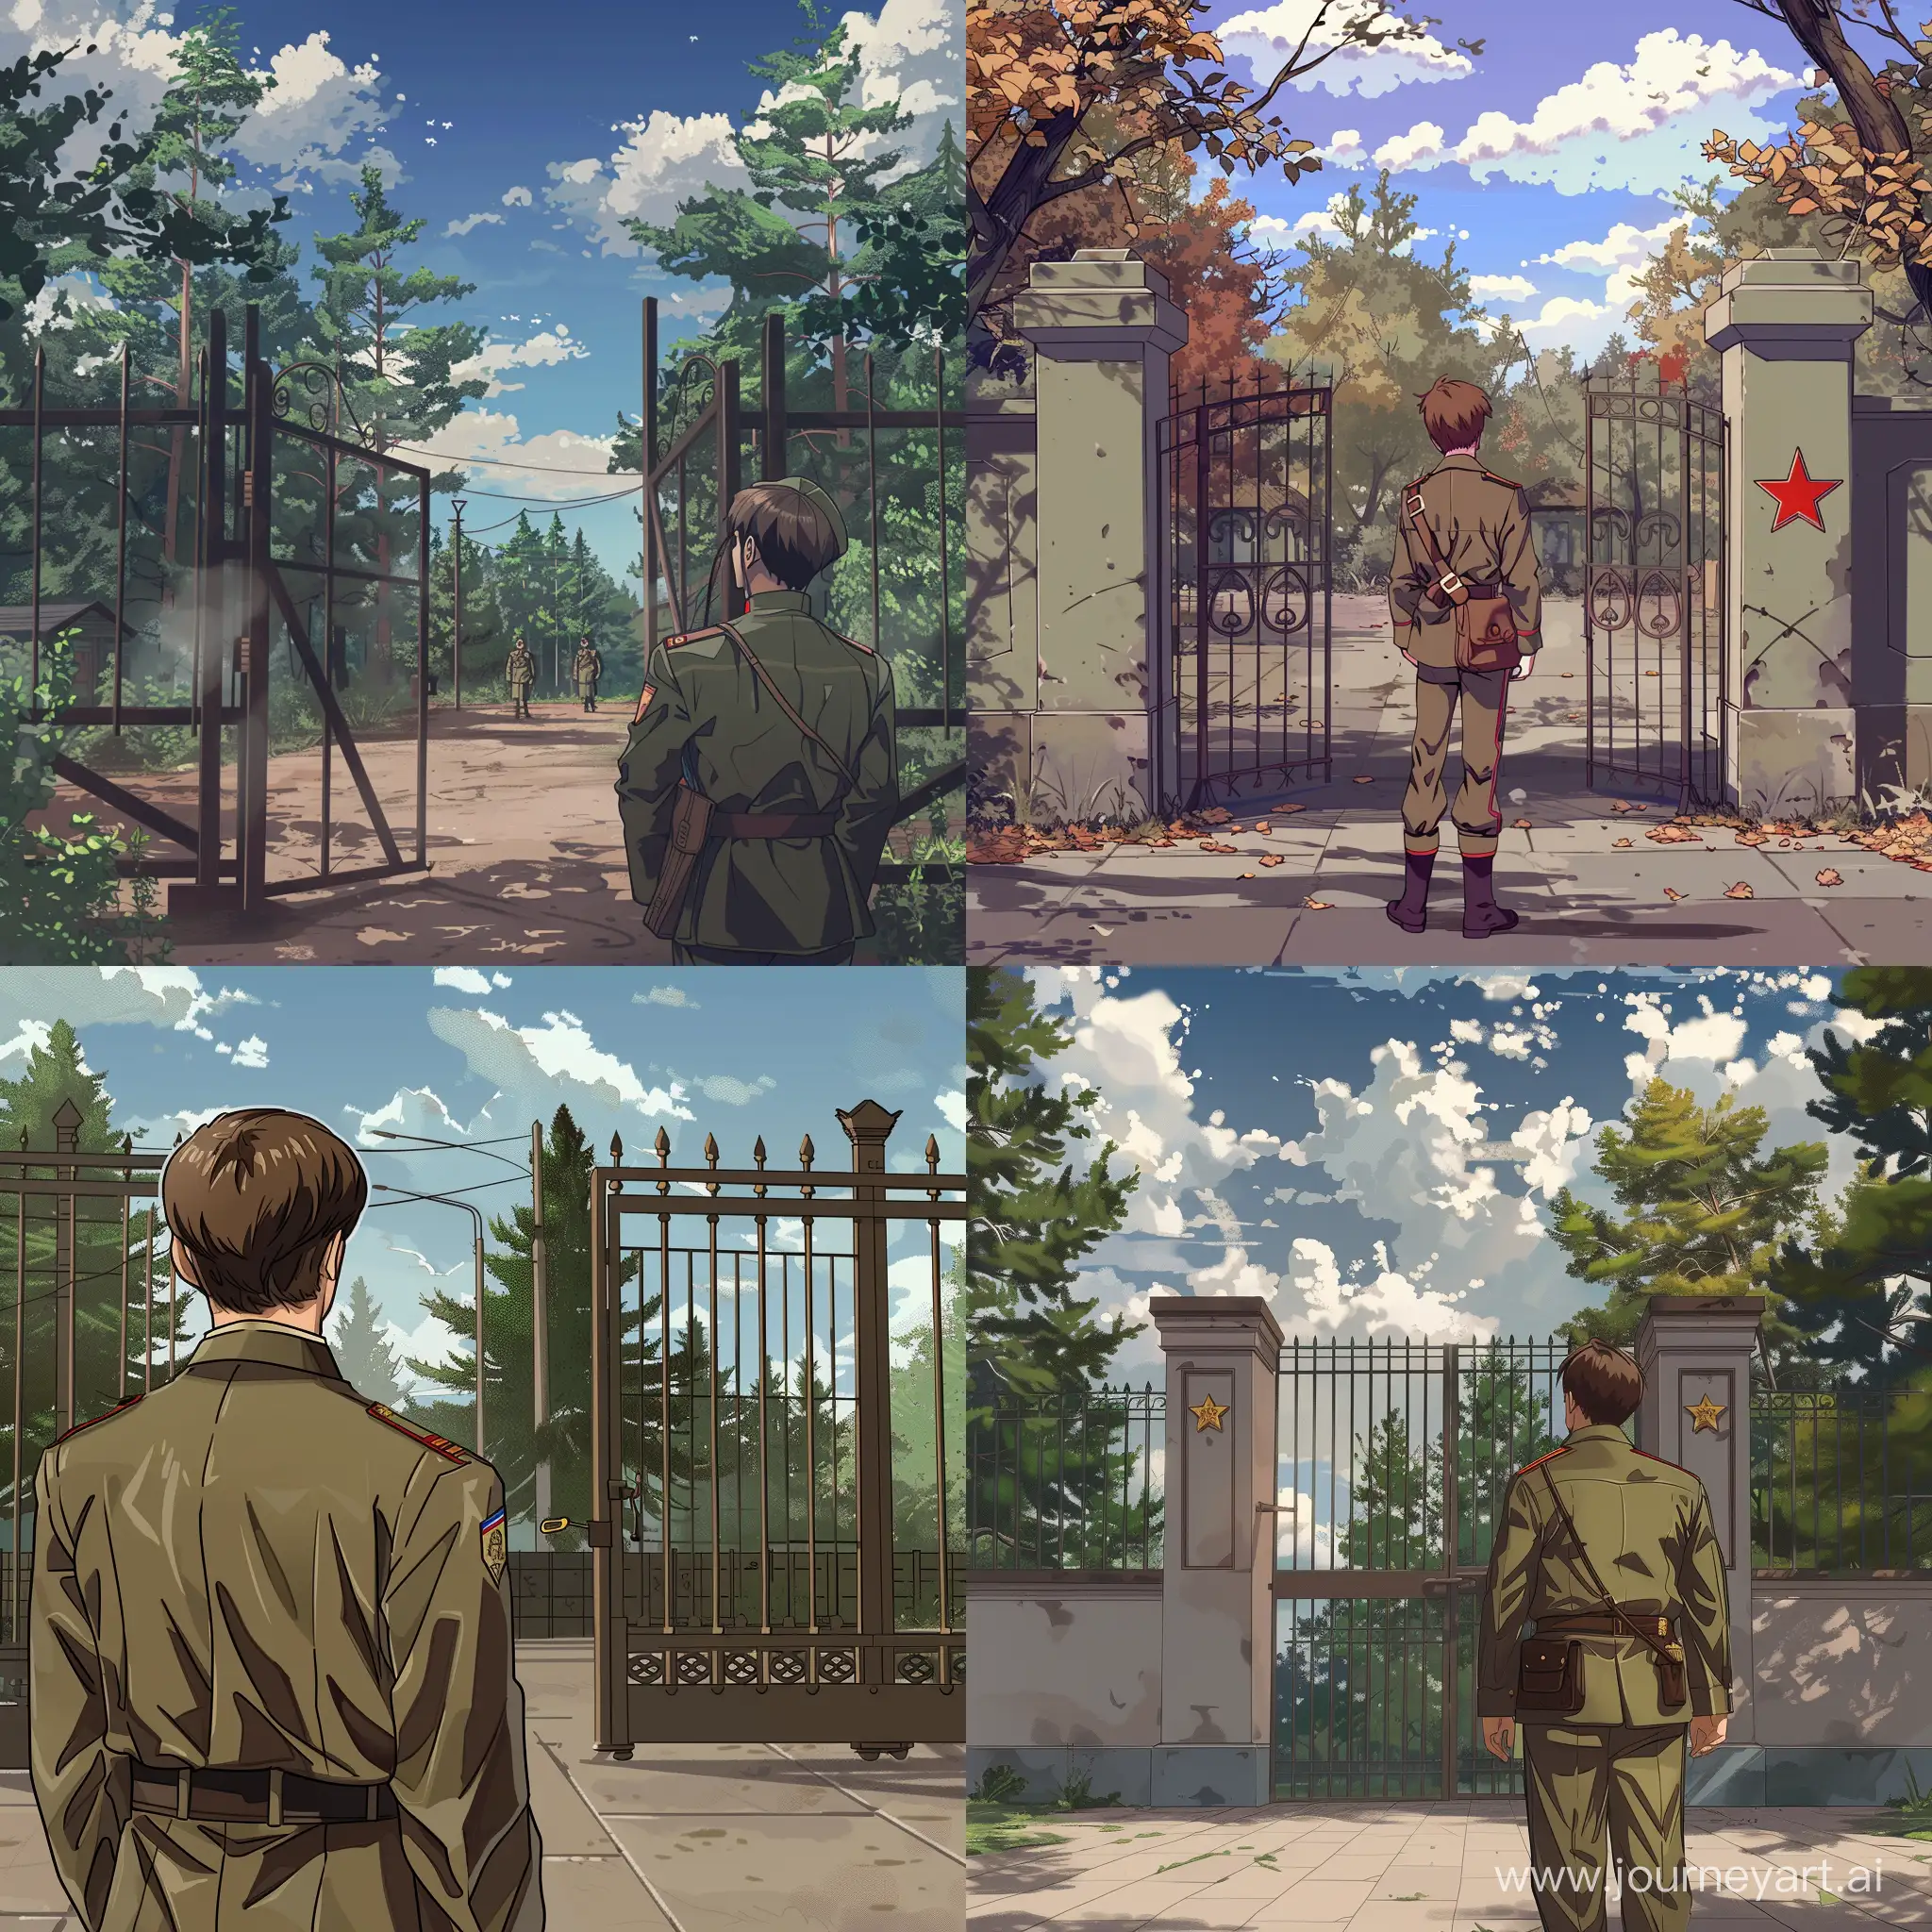 Парень в пионерской форме СССР стоит и смотрит на ворота лагеря пионер лагеря из СССР, стиль визуальная новелла "everlasting summer"